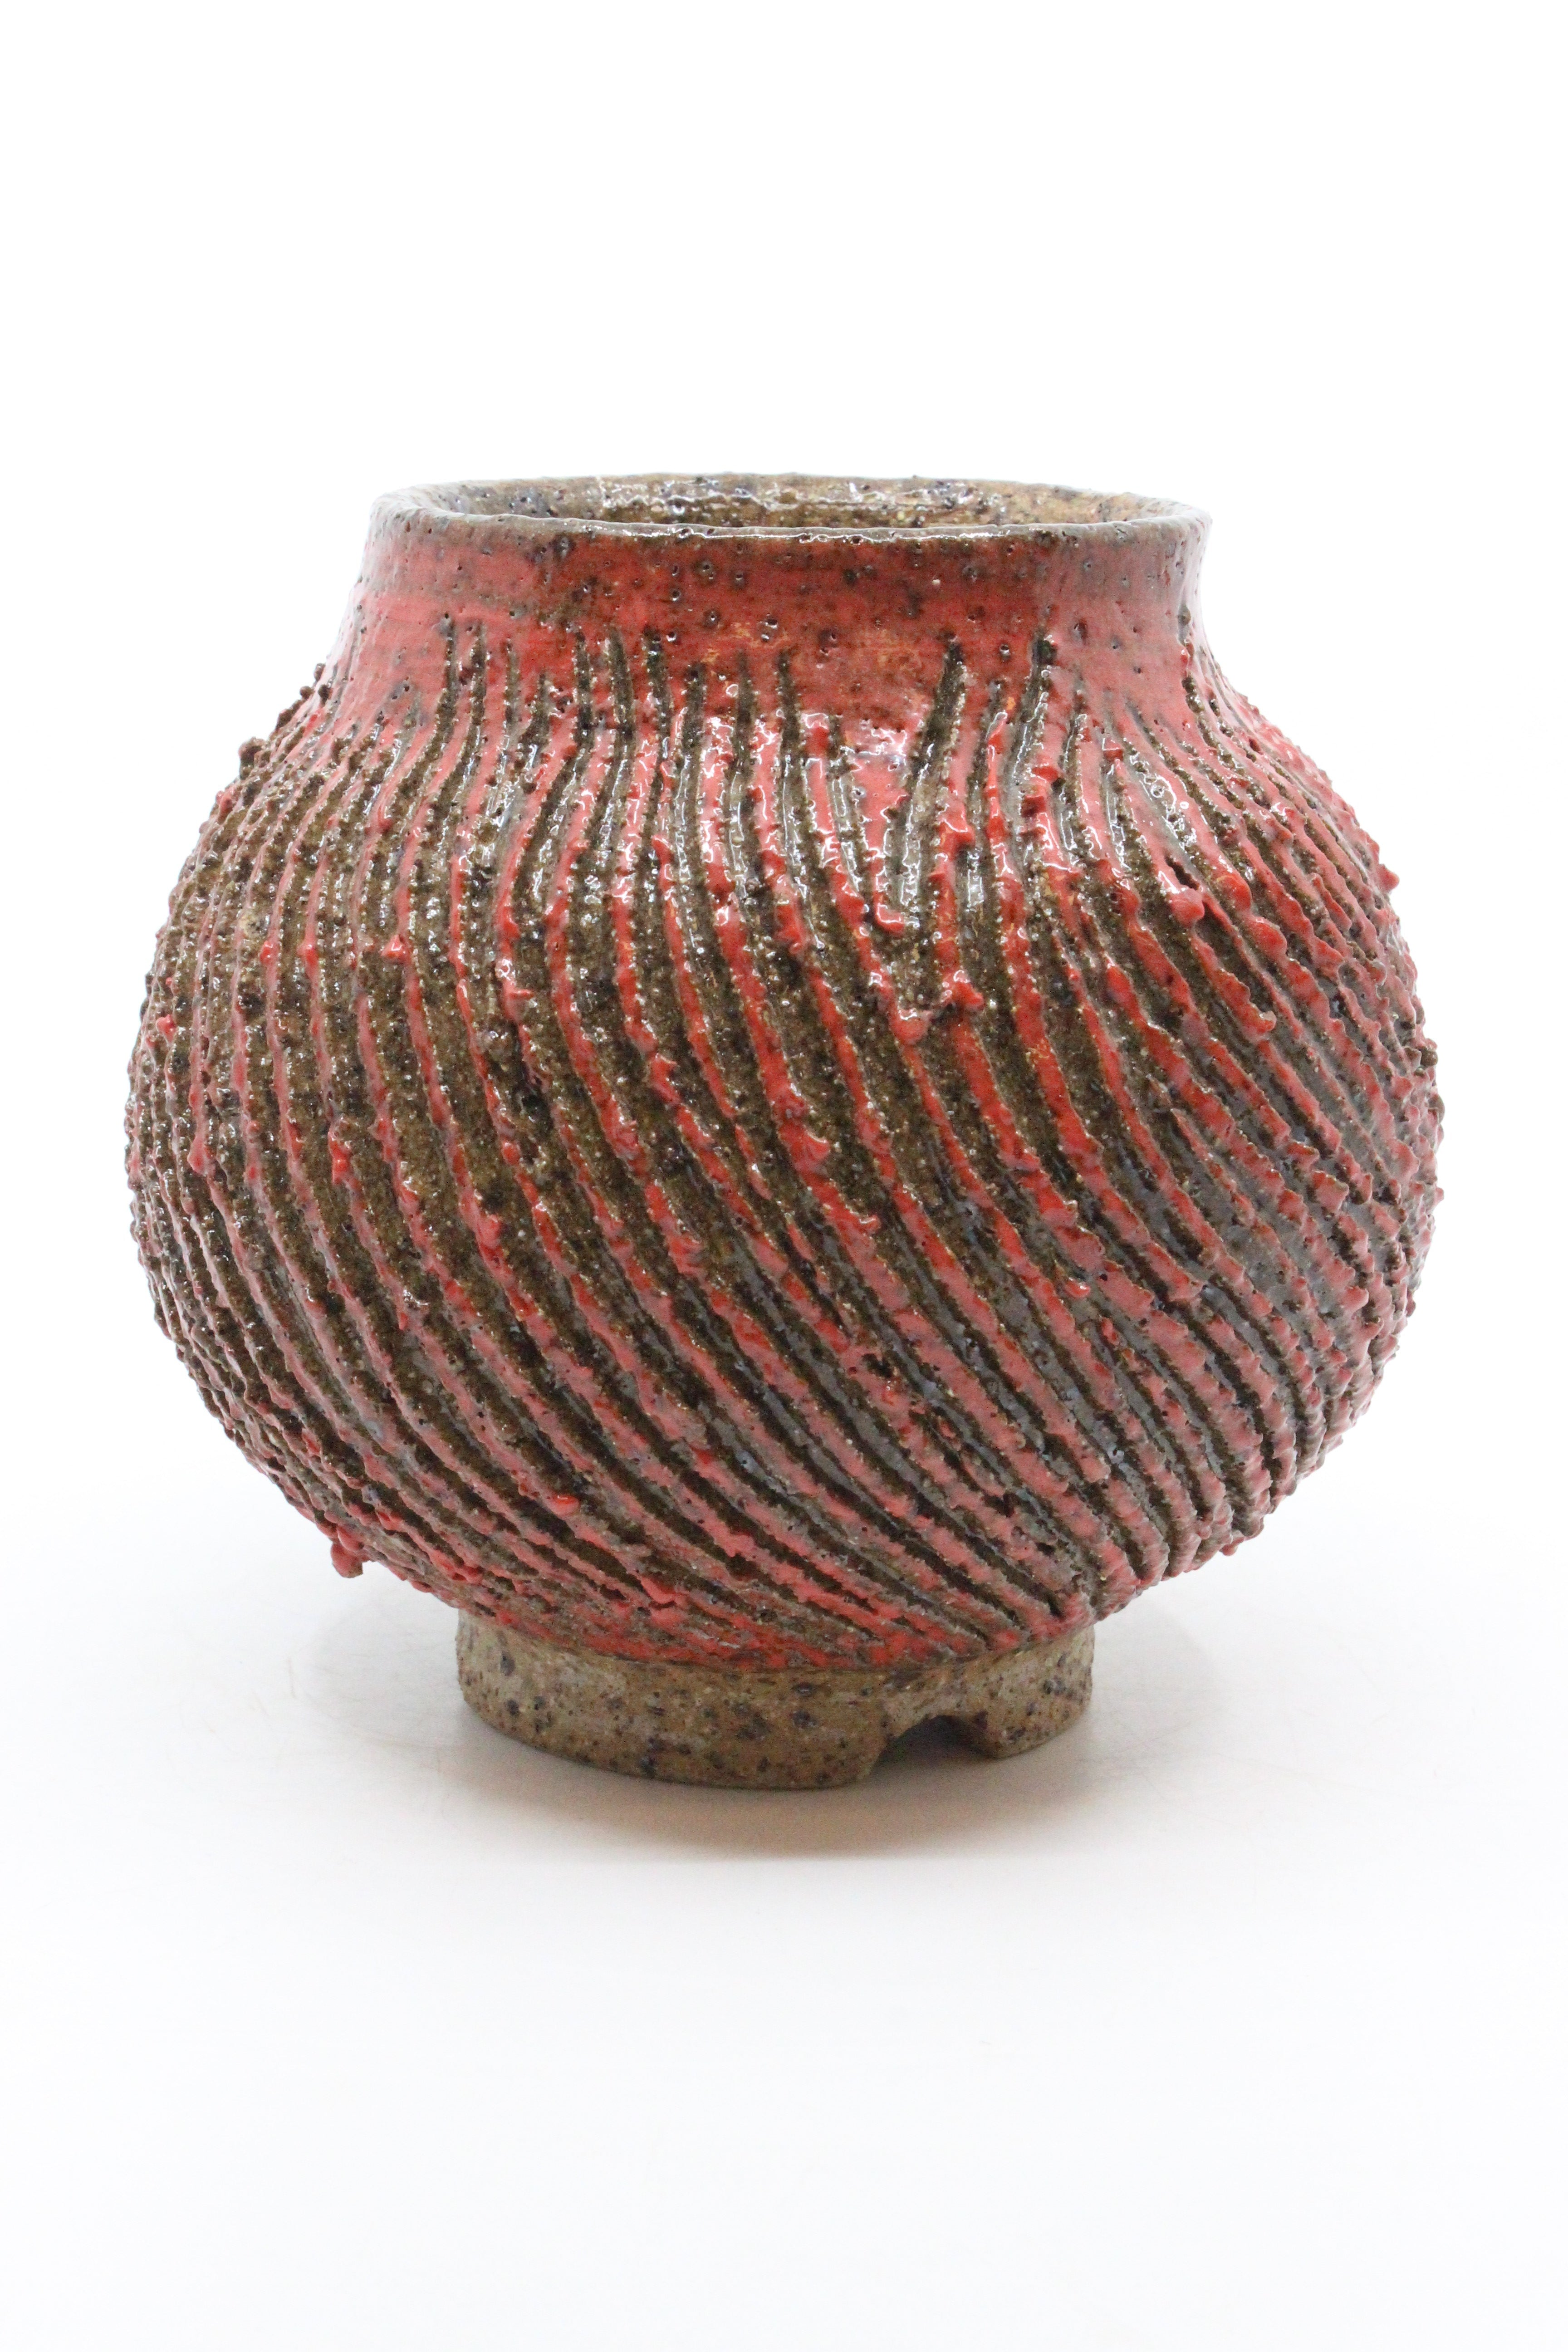 Textured Twist Vase - Medium Ceramics Peter Scott 